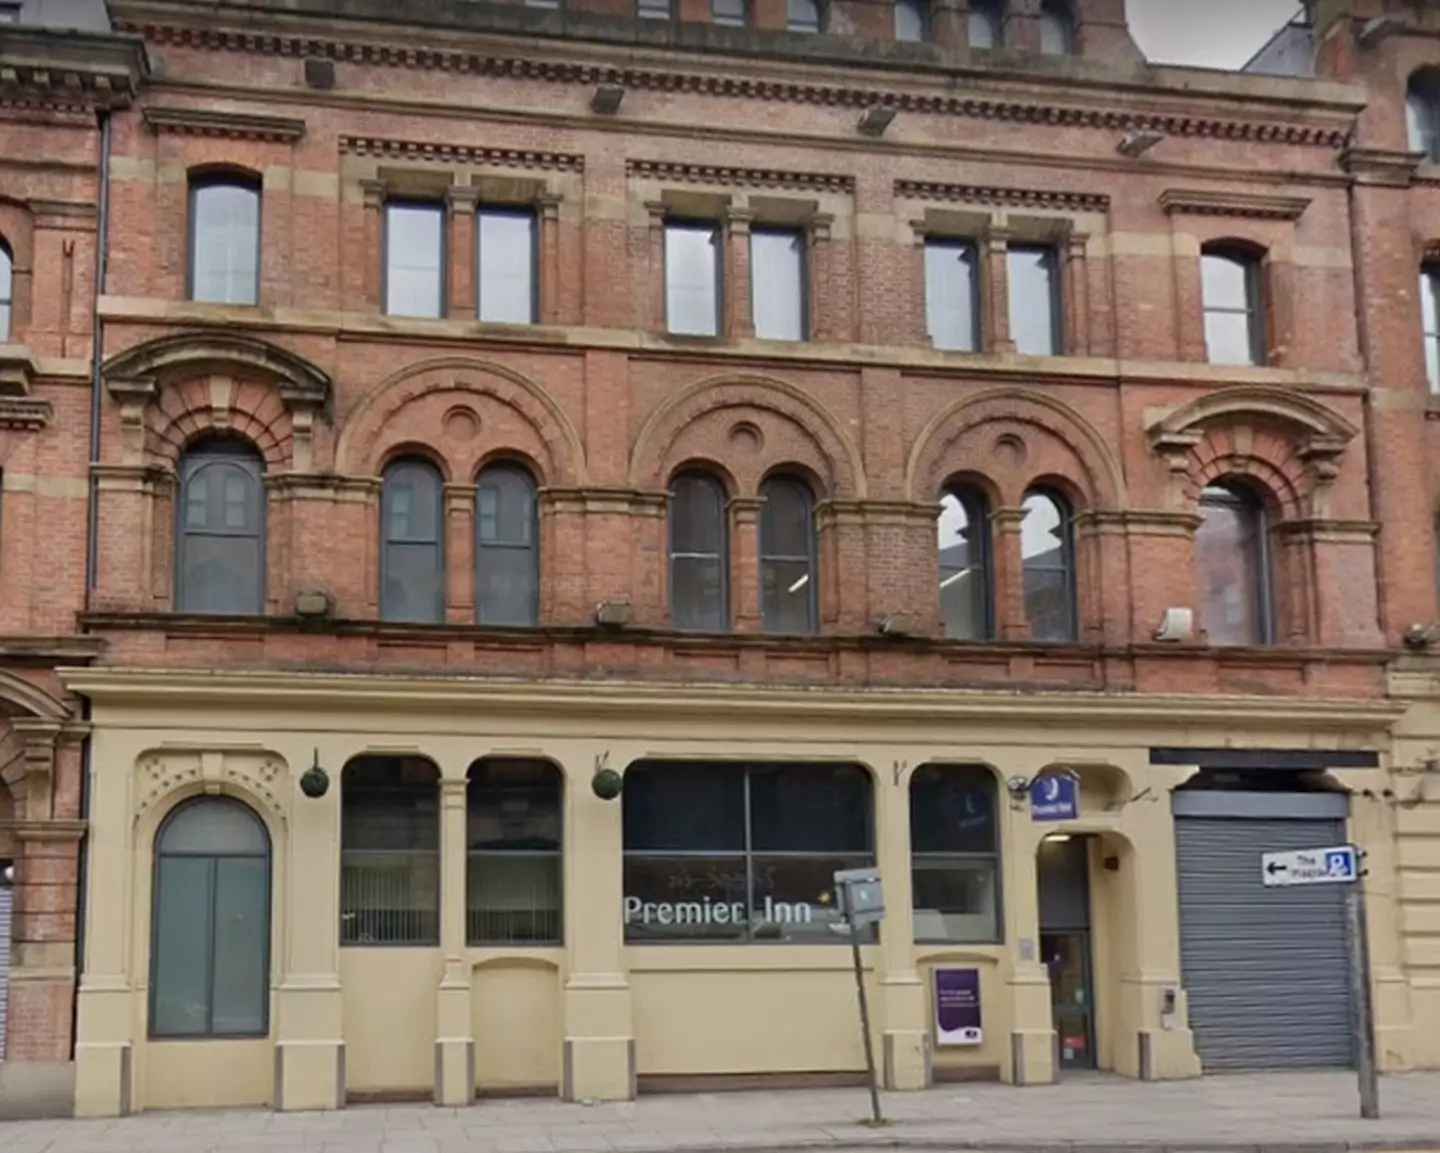 Blake branded the Manchester branch the "worst Premier Inn".